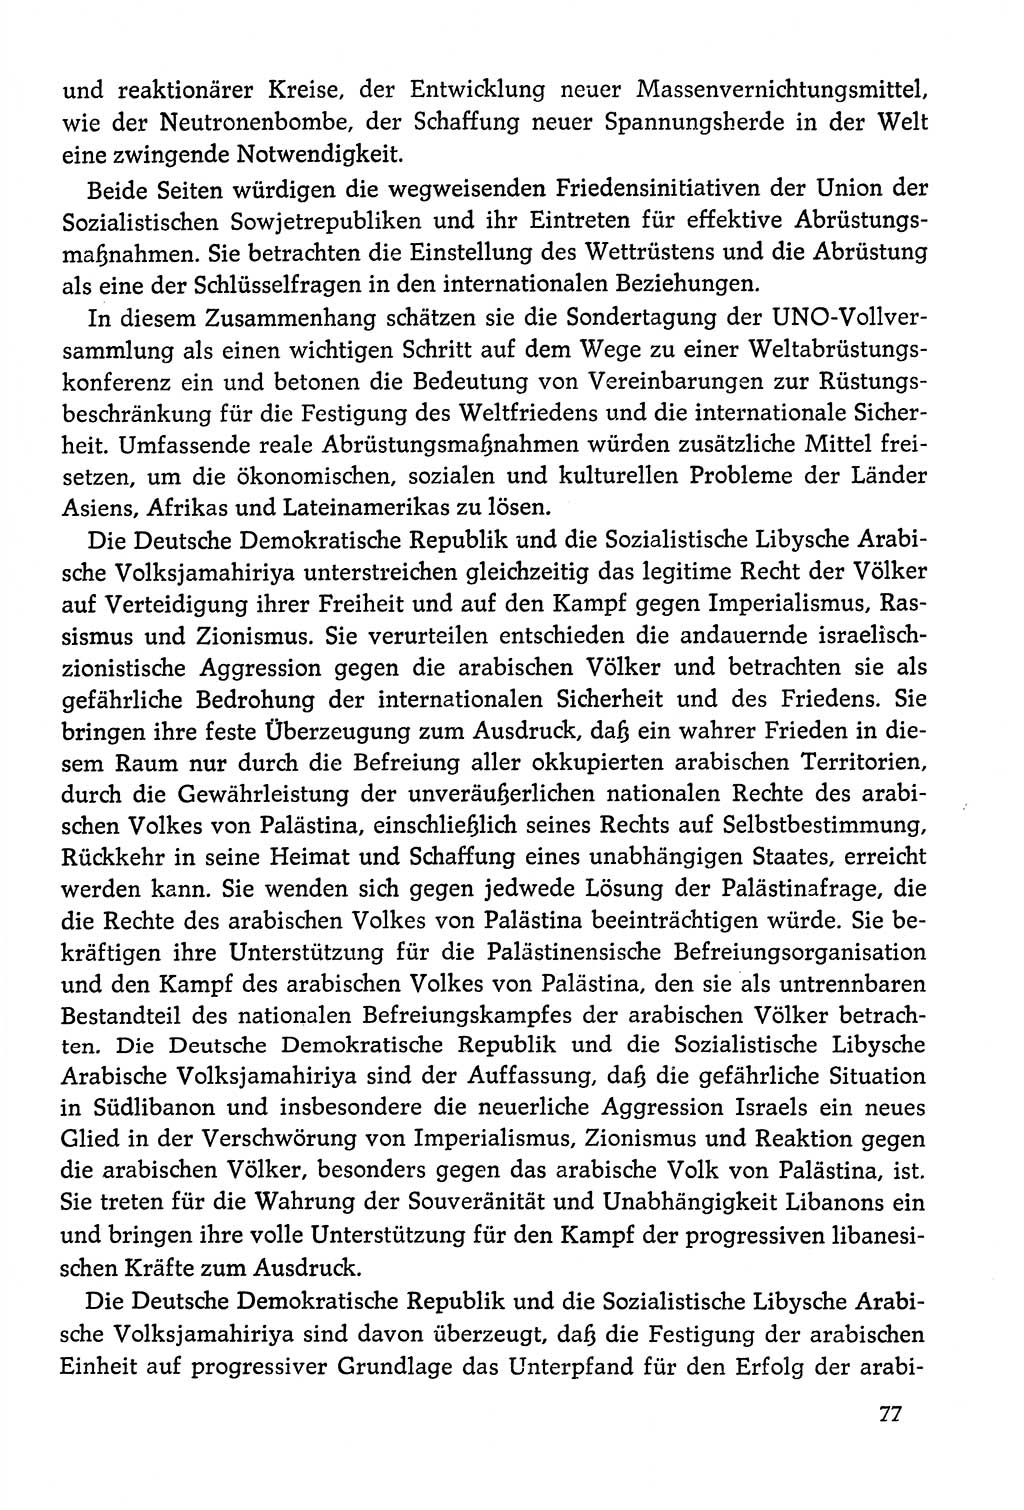 Dokumente der Sozialistischen Einheitspartei Deutschlands (SED) [Deutsche Demokratische Republik (DDR)] 1978-1979, Seite 77 (Dok. SED DDR 1978-1979, S. 77)